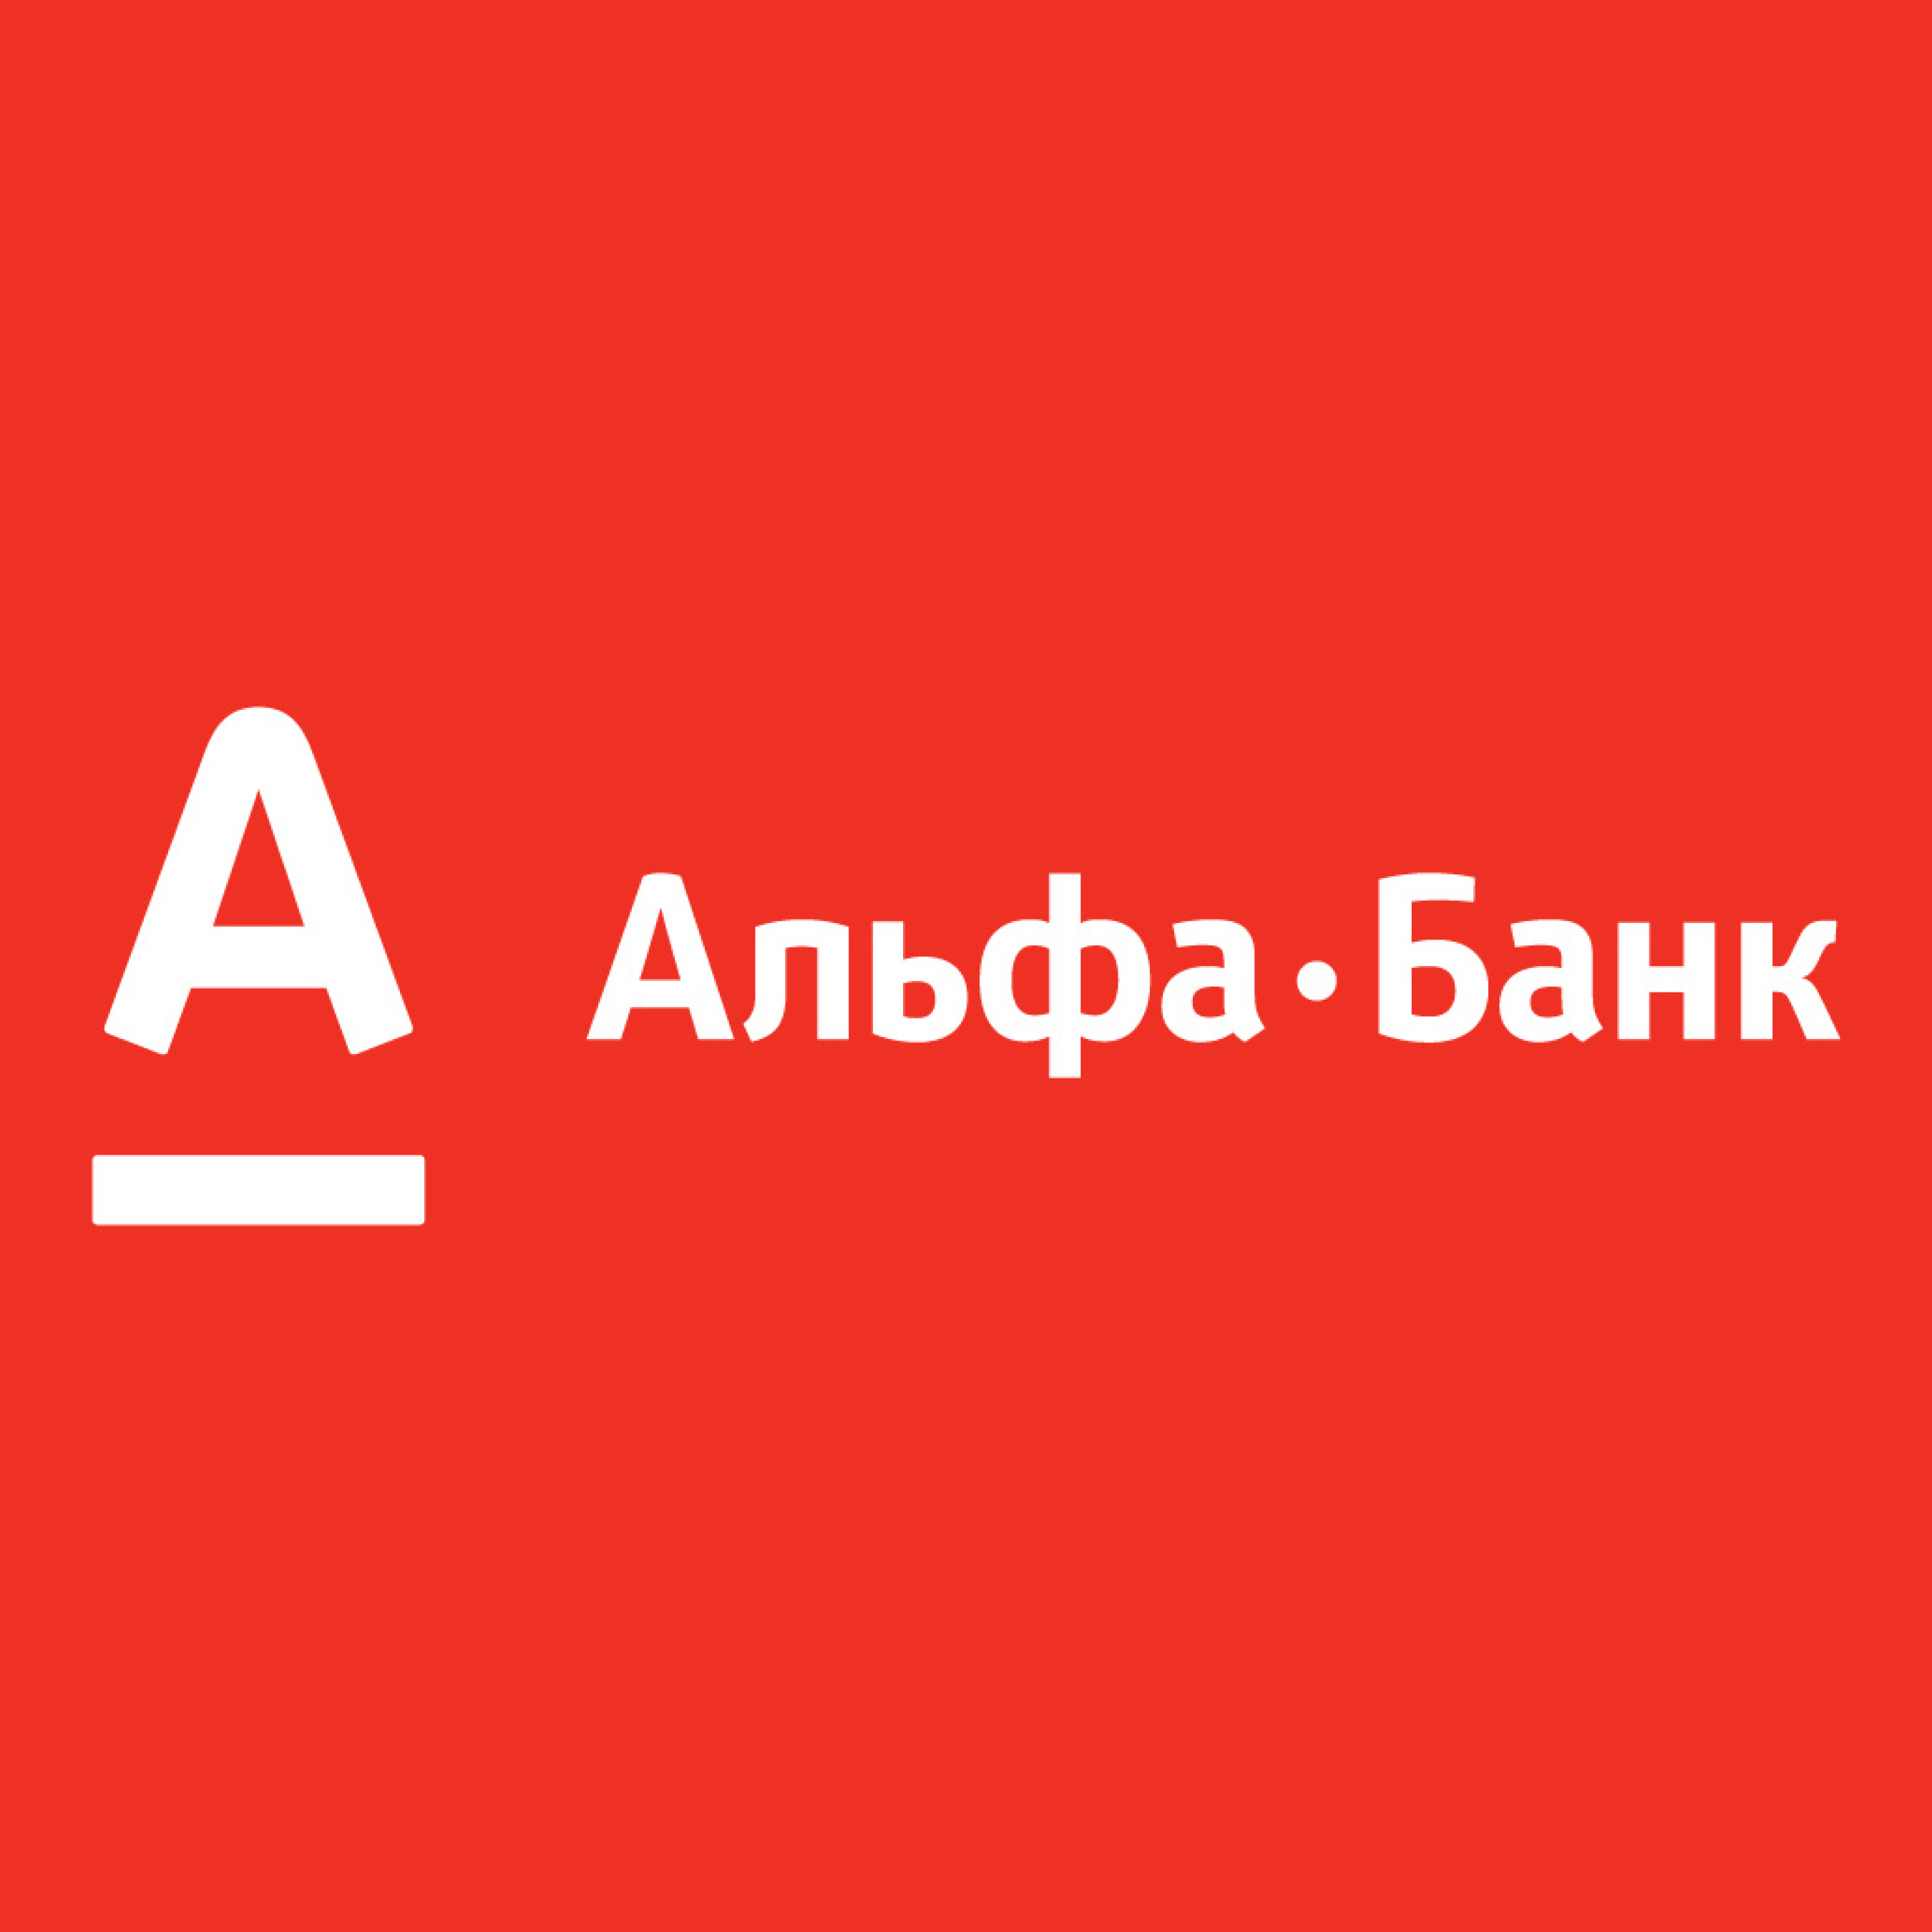 Альфа банк маркетплейс. Альфа банк. Логотип банка Альфа банк. Альфа банк Казахстан логотип. Альфа банк логотип новый.